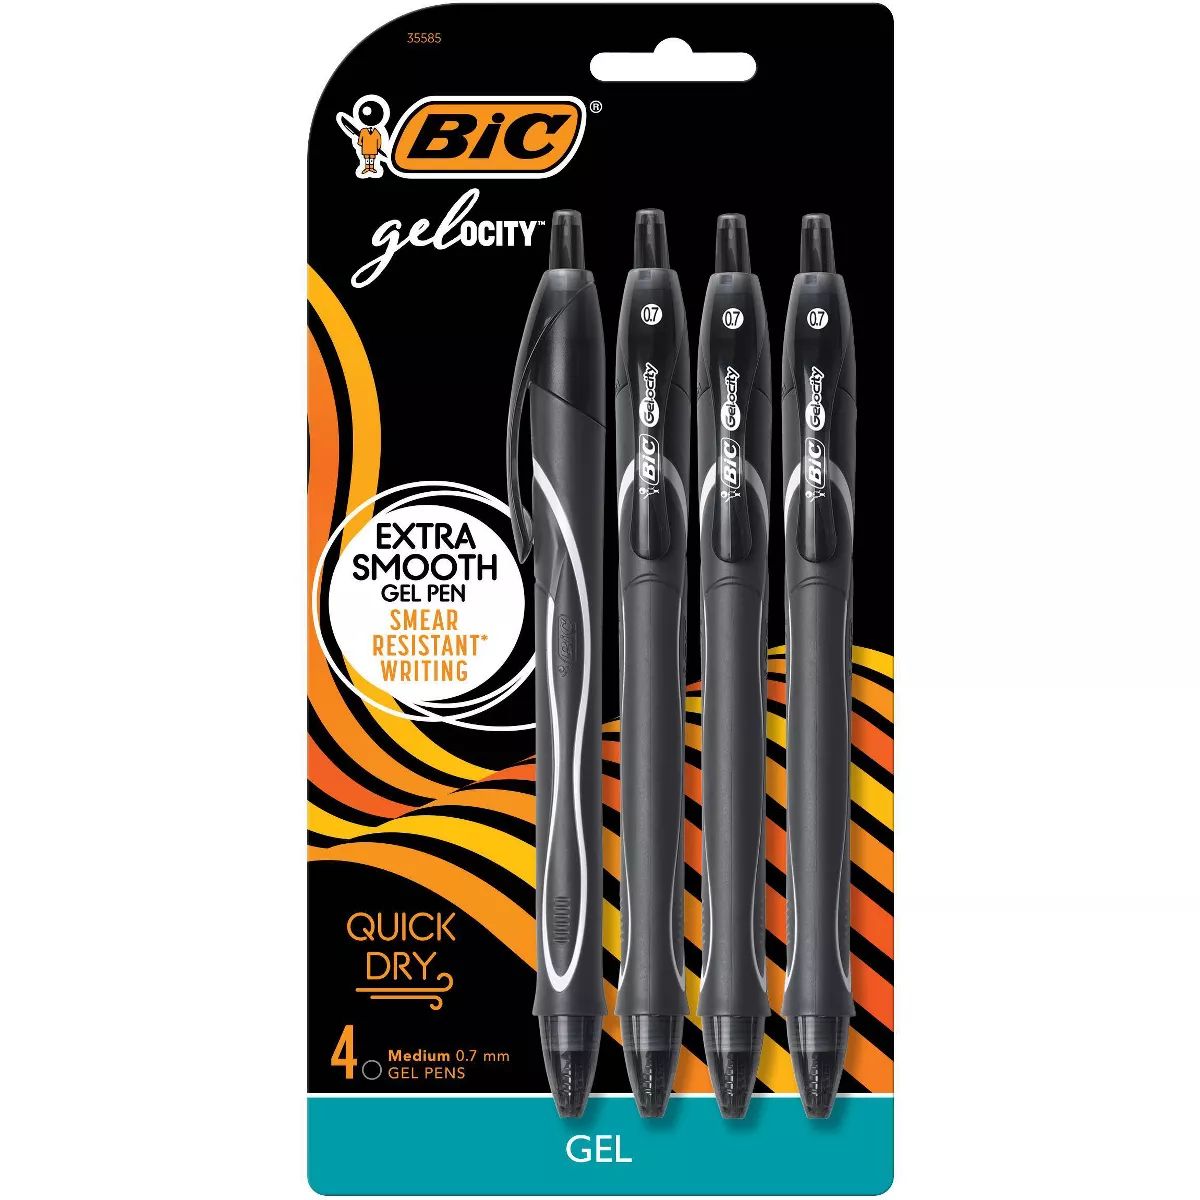 BIC Gel-ocity 3pk Gel Pens Medium Black Ink | Target